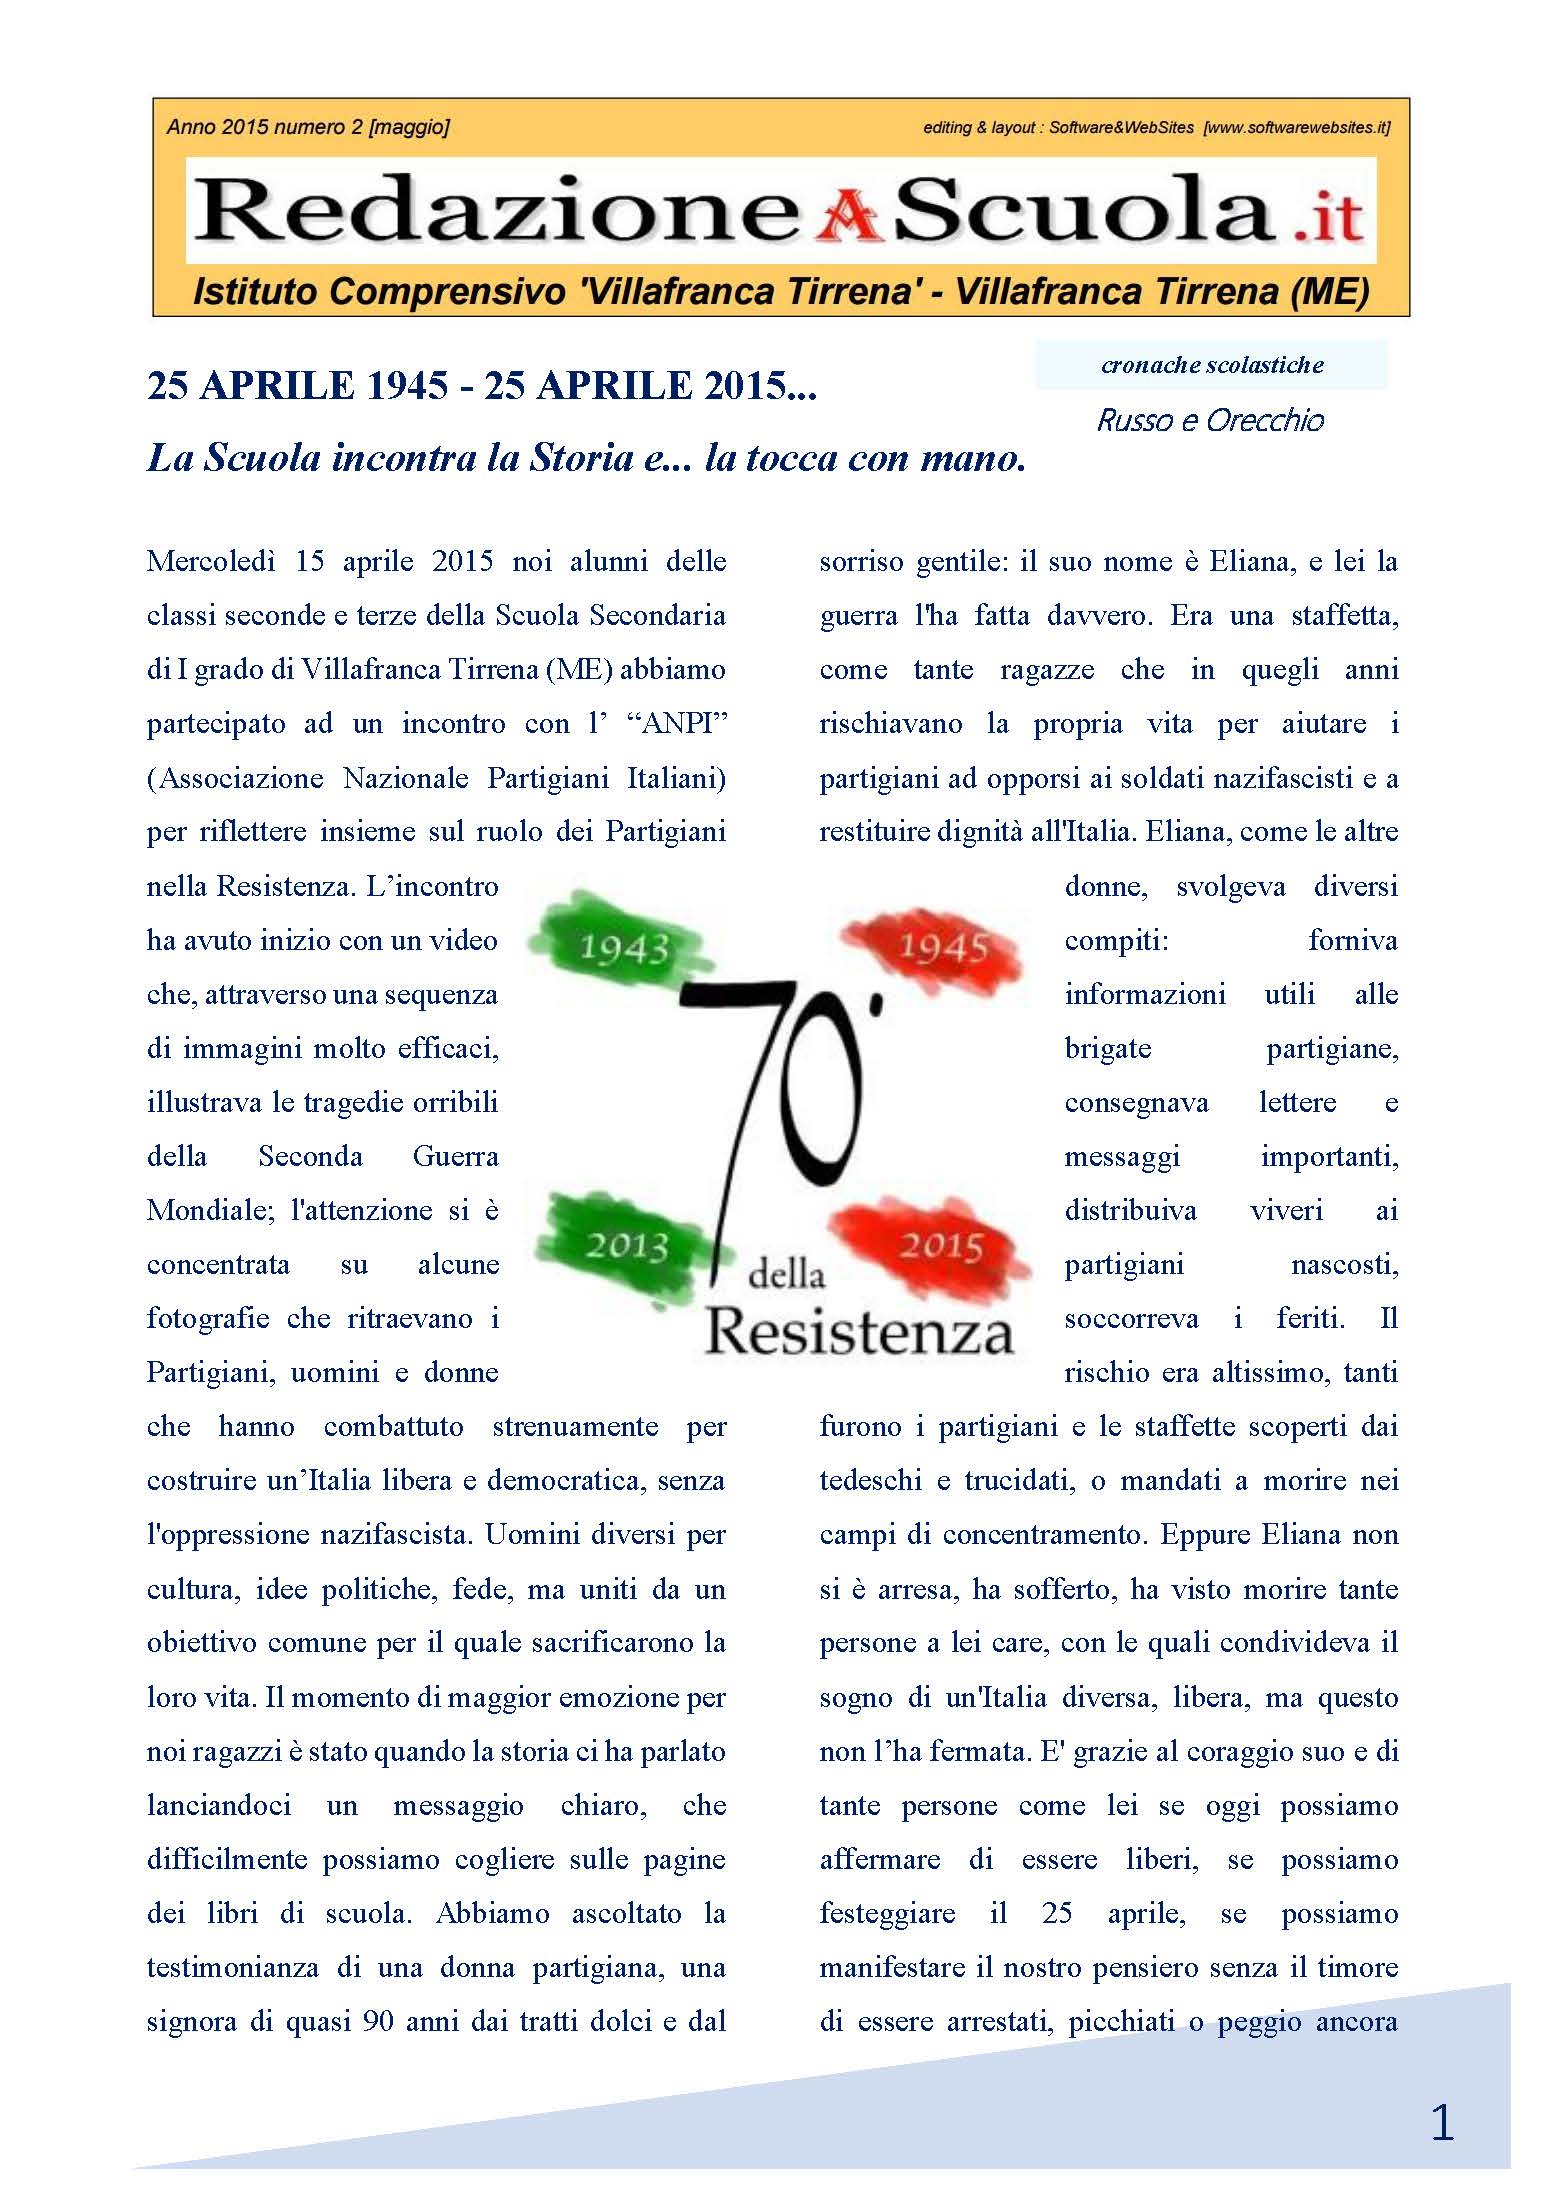 RedazioneAScuola.it Edizione 02 a.s. 2014 2015